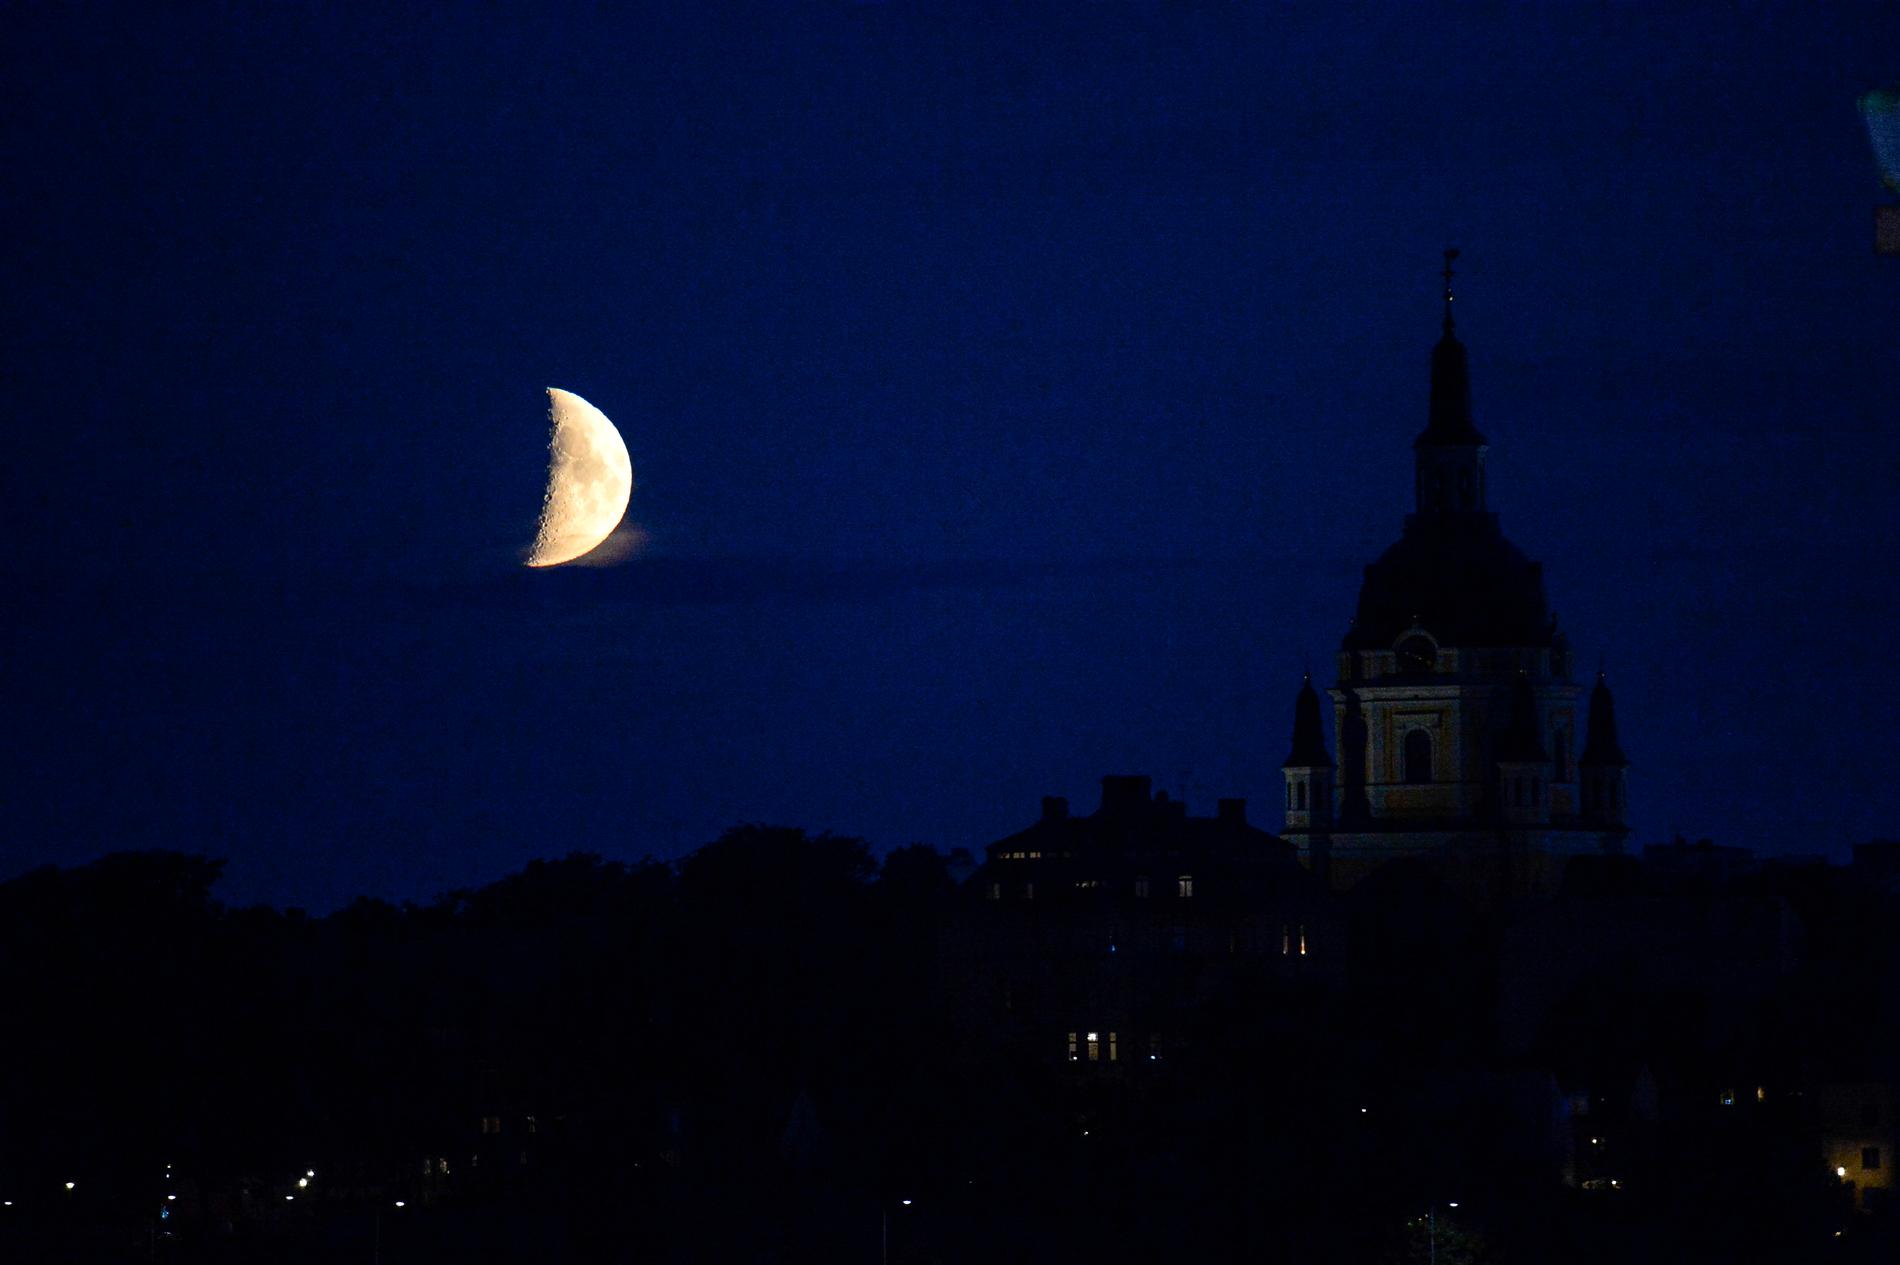 Frida Söderlund: ”Jag ser månen och tänker att fastän den är halv så är den fortfarande hel någonstans. I den mörkaste av tid lyser den oavsett vad.”